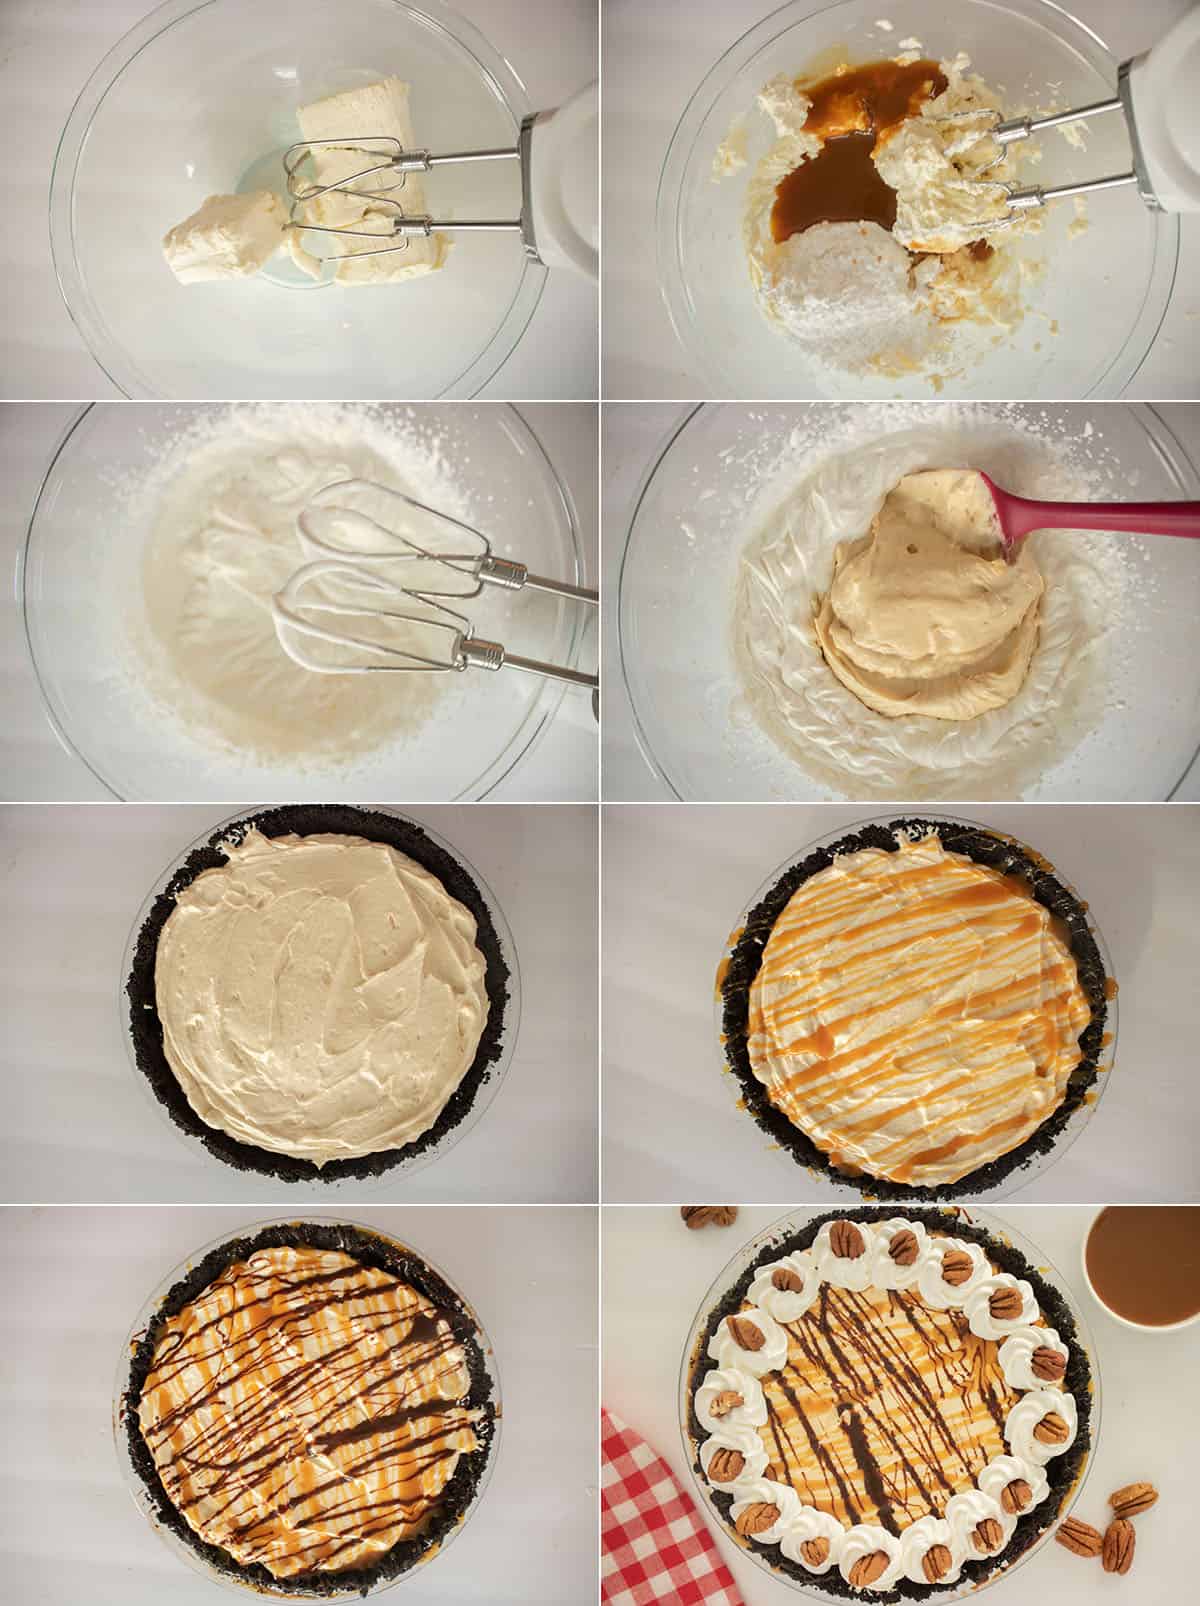 Process of making no bake pie.